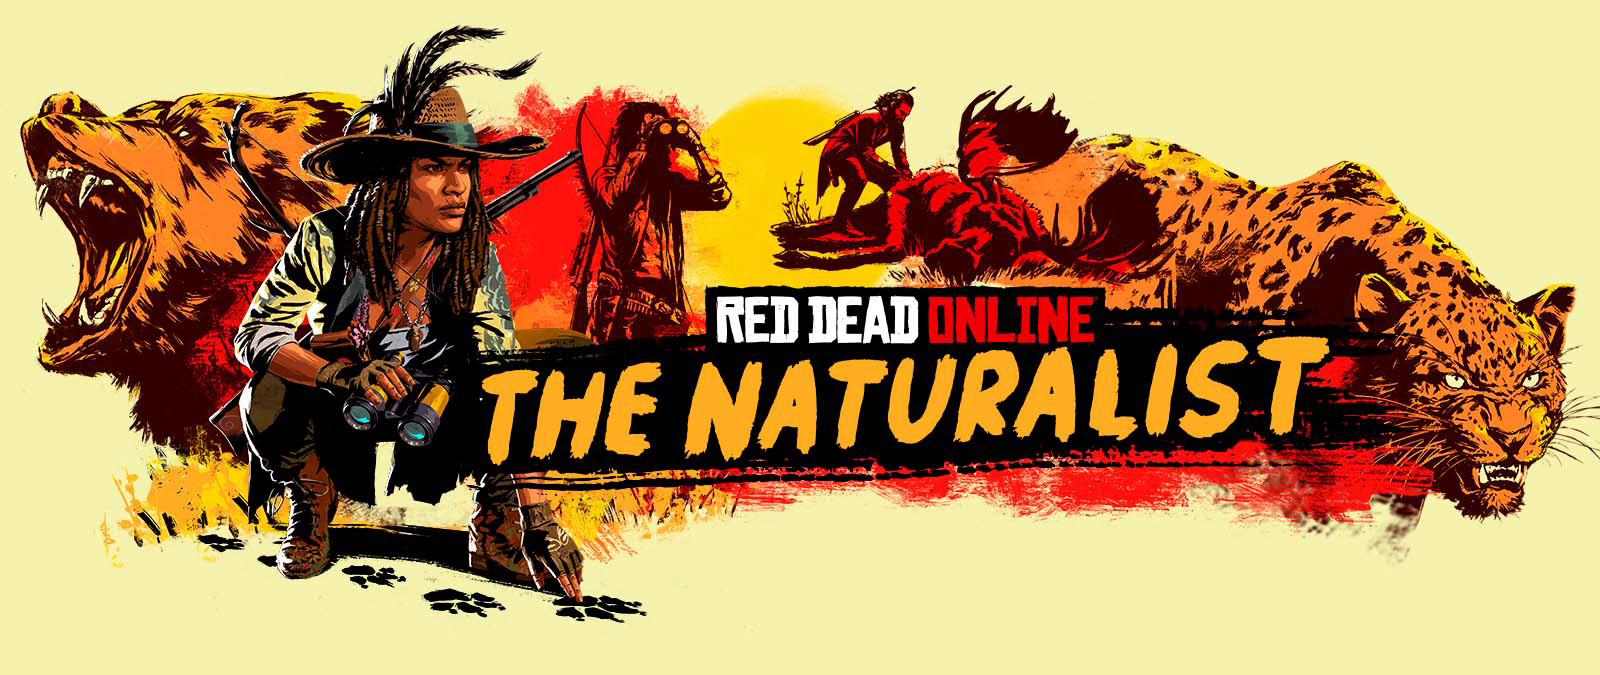 Red Dead Online. The Naturalist. Personajes rastreando y cazando grandes animales.